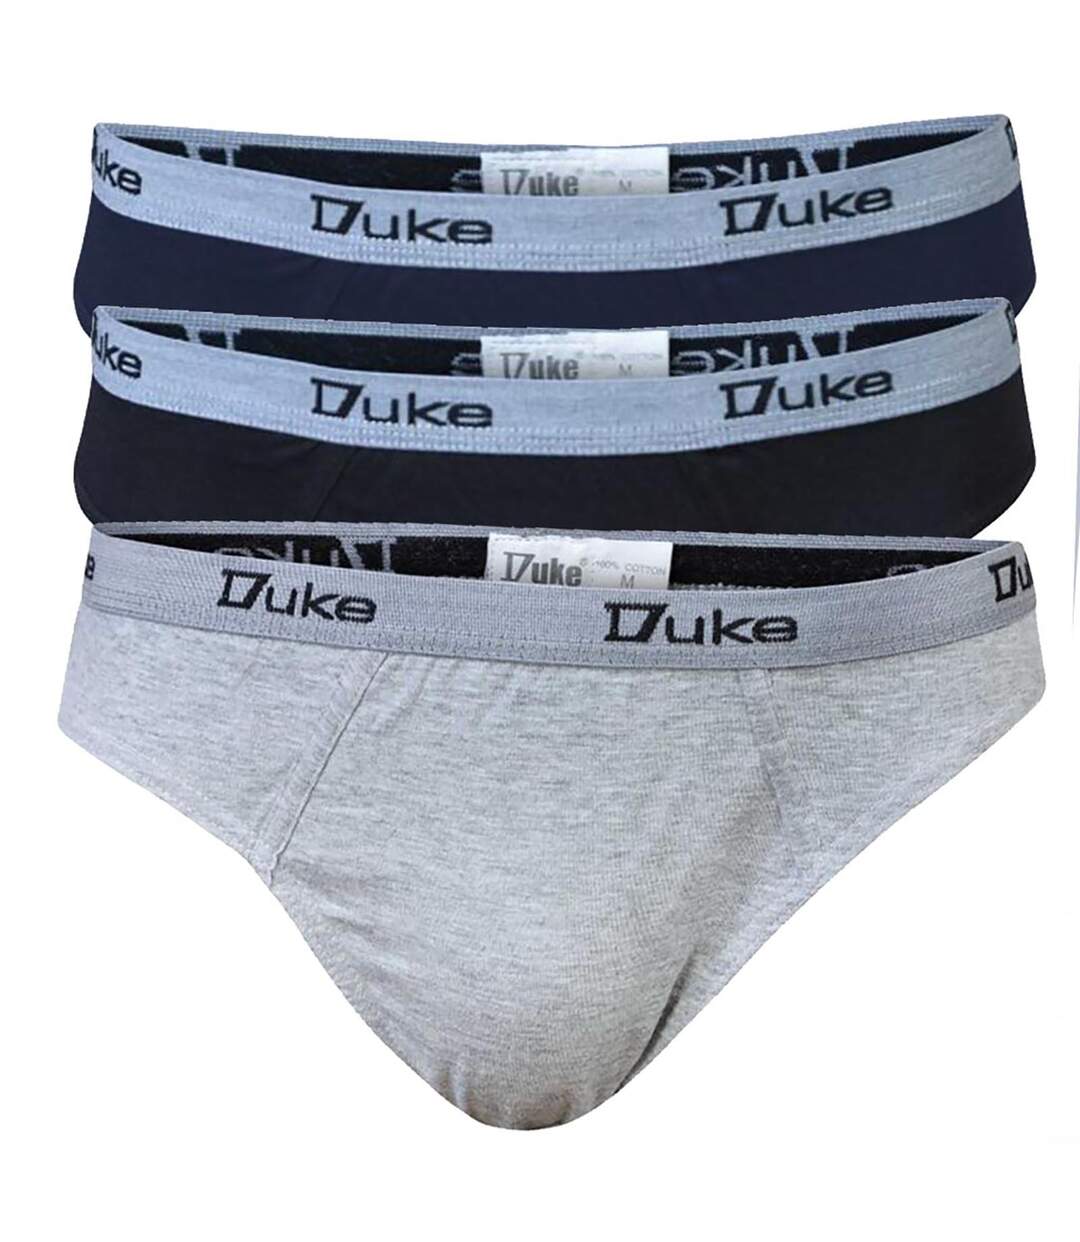 Duke London - Slips grande taille - Homme (Noir/gris/bleu marine) - UTDC107